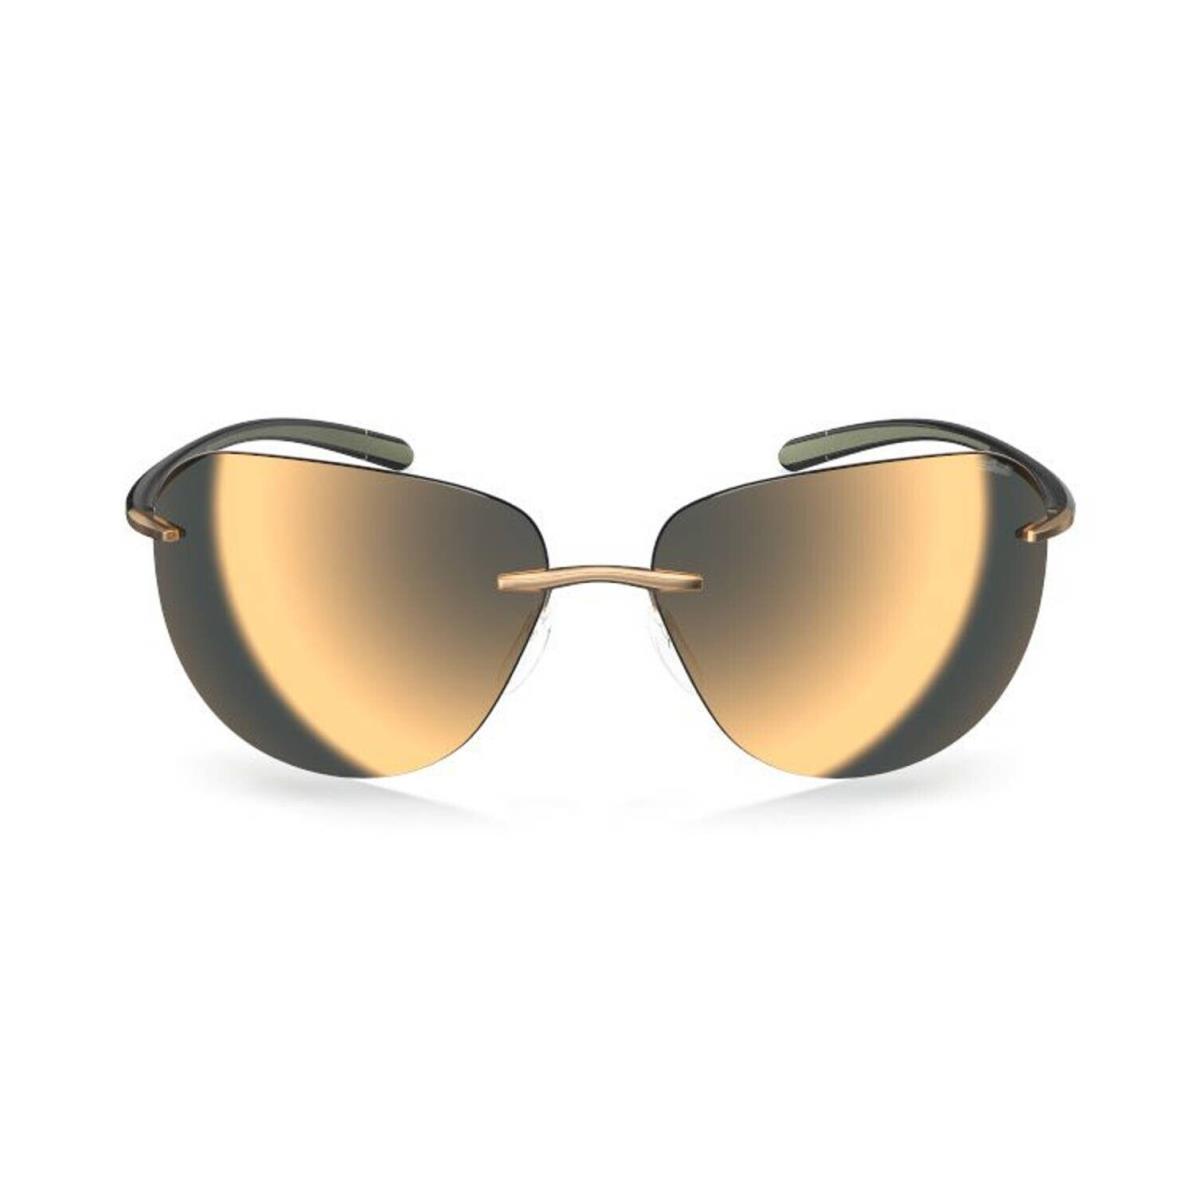 Silhouette Bayside 8729 Black Desert Beige/gold Mirrored 7530 Sunglasses - Frame: Black Desert Beige, Lens: Gold Mirrored